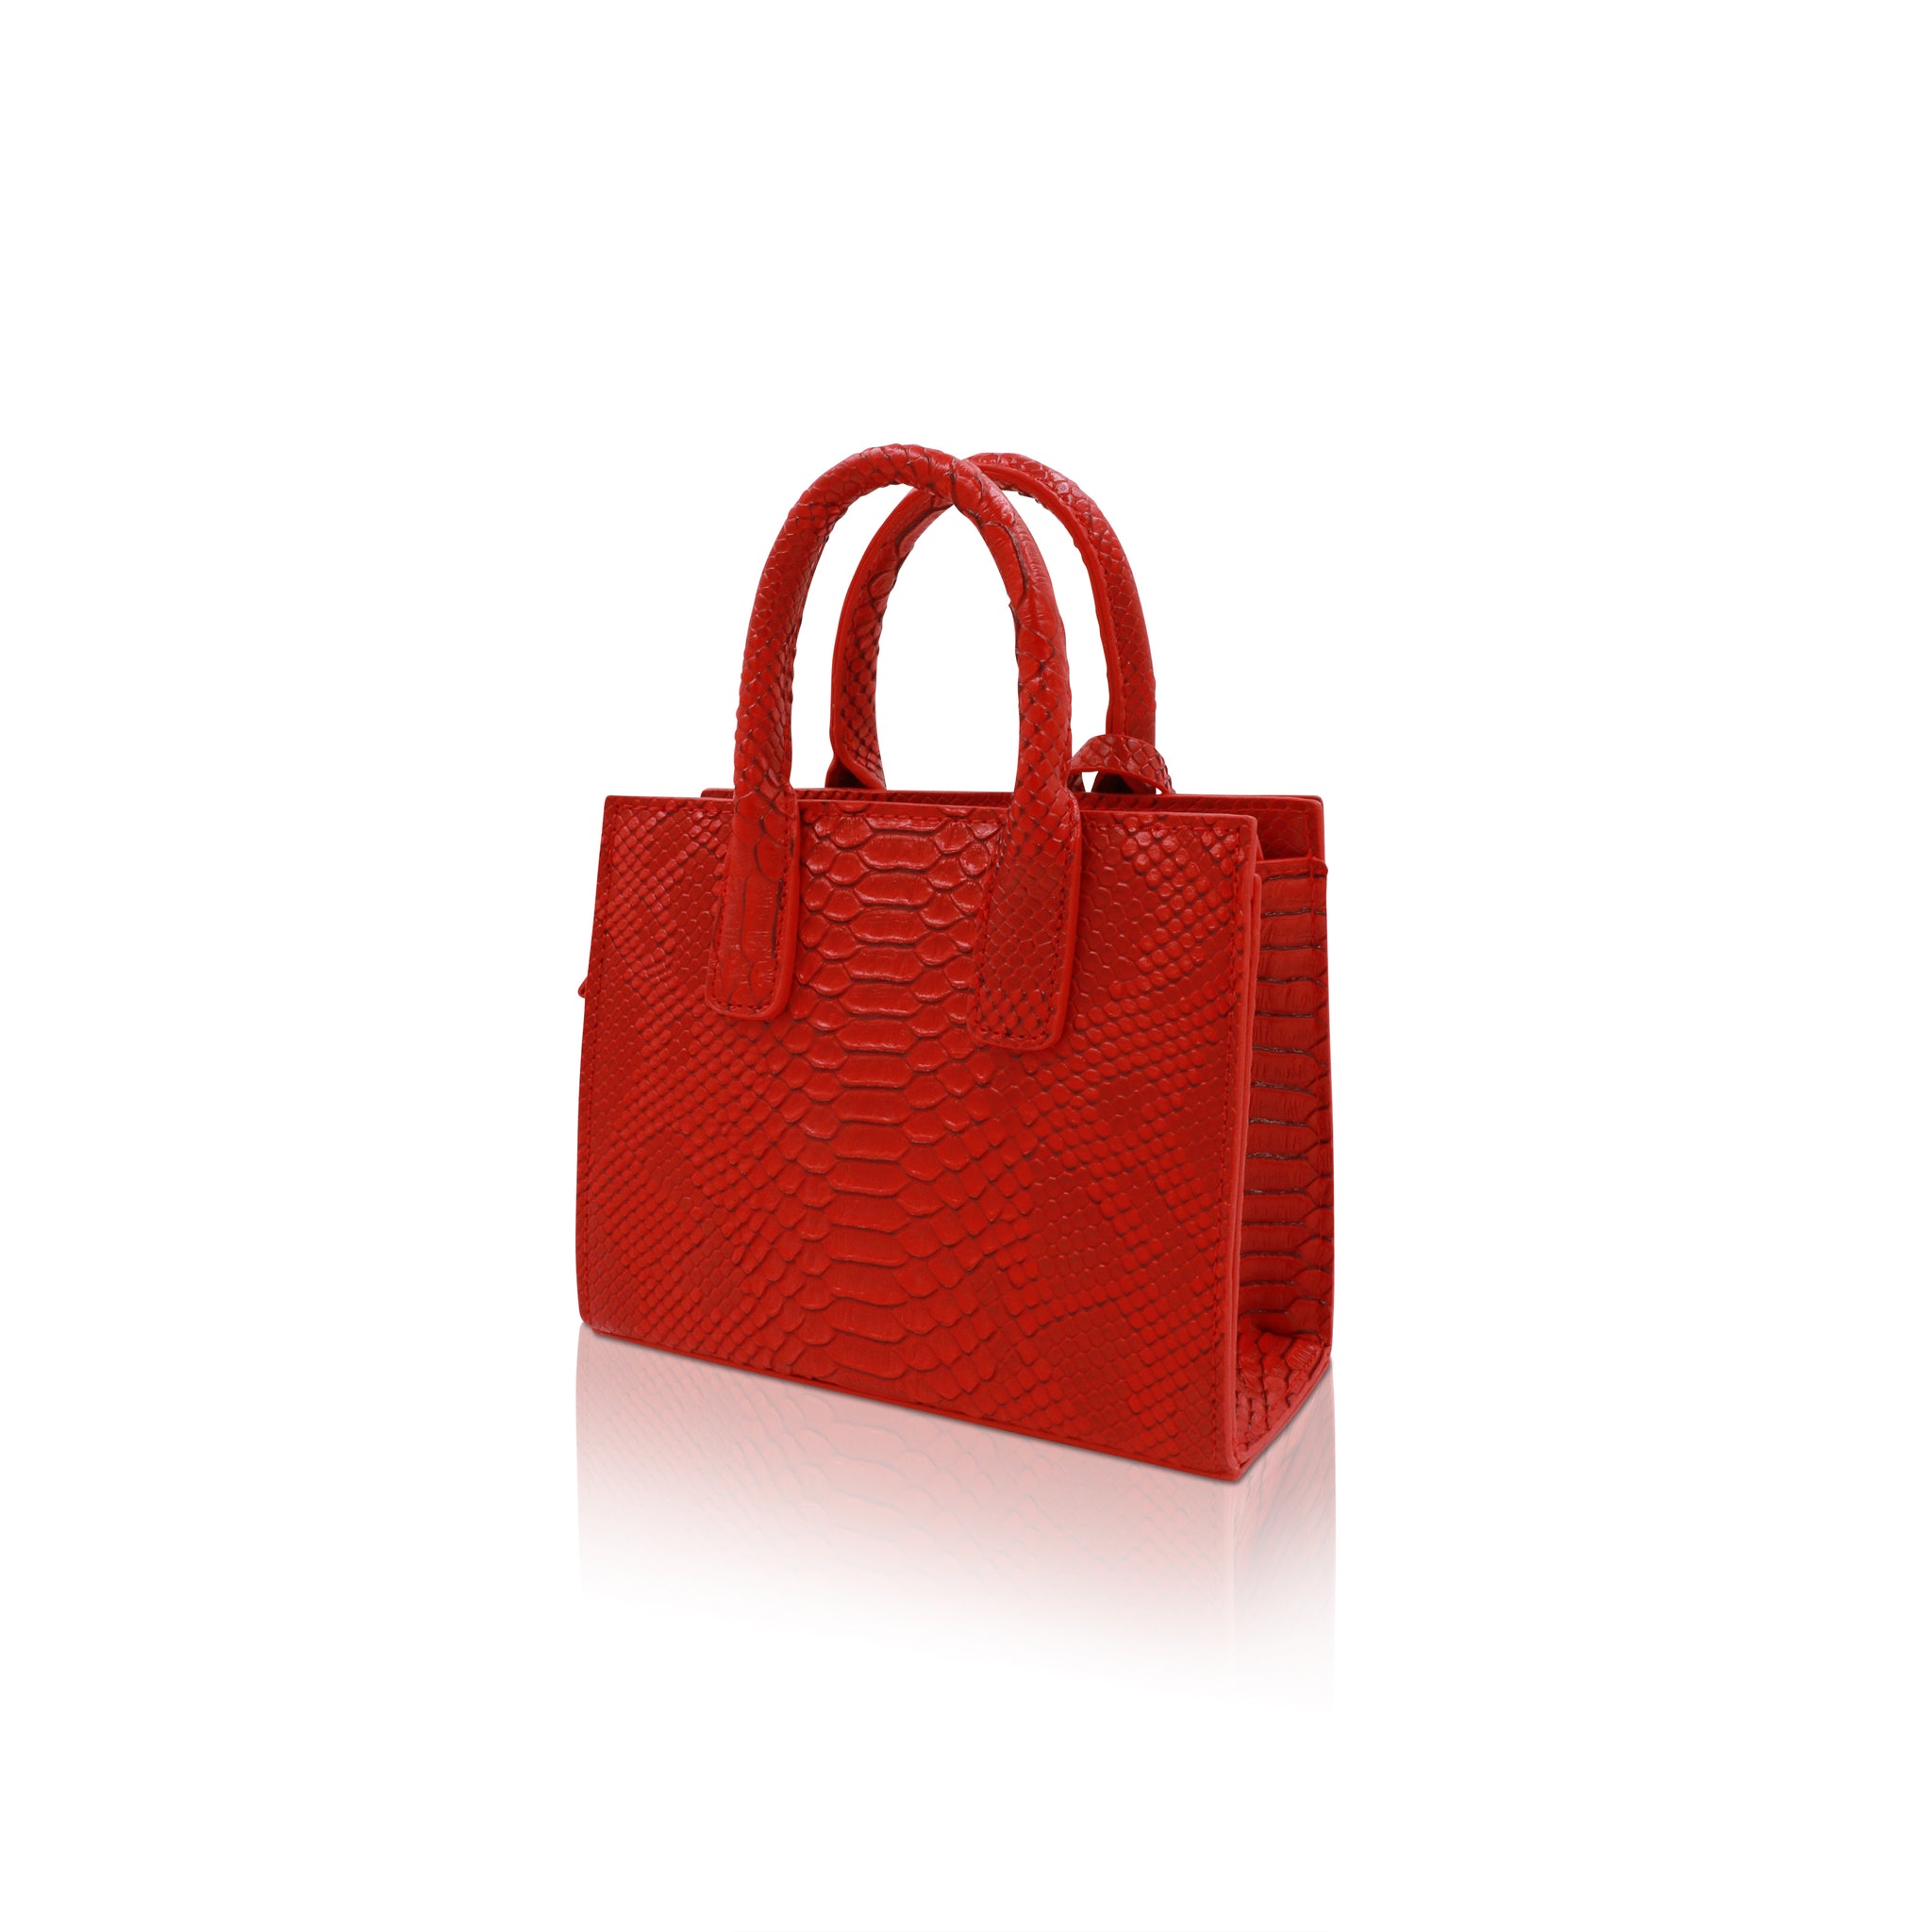 The python mini purse (Monaco Red) –